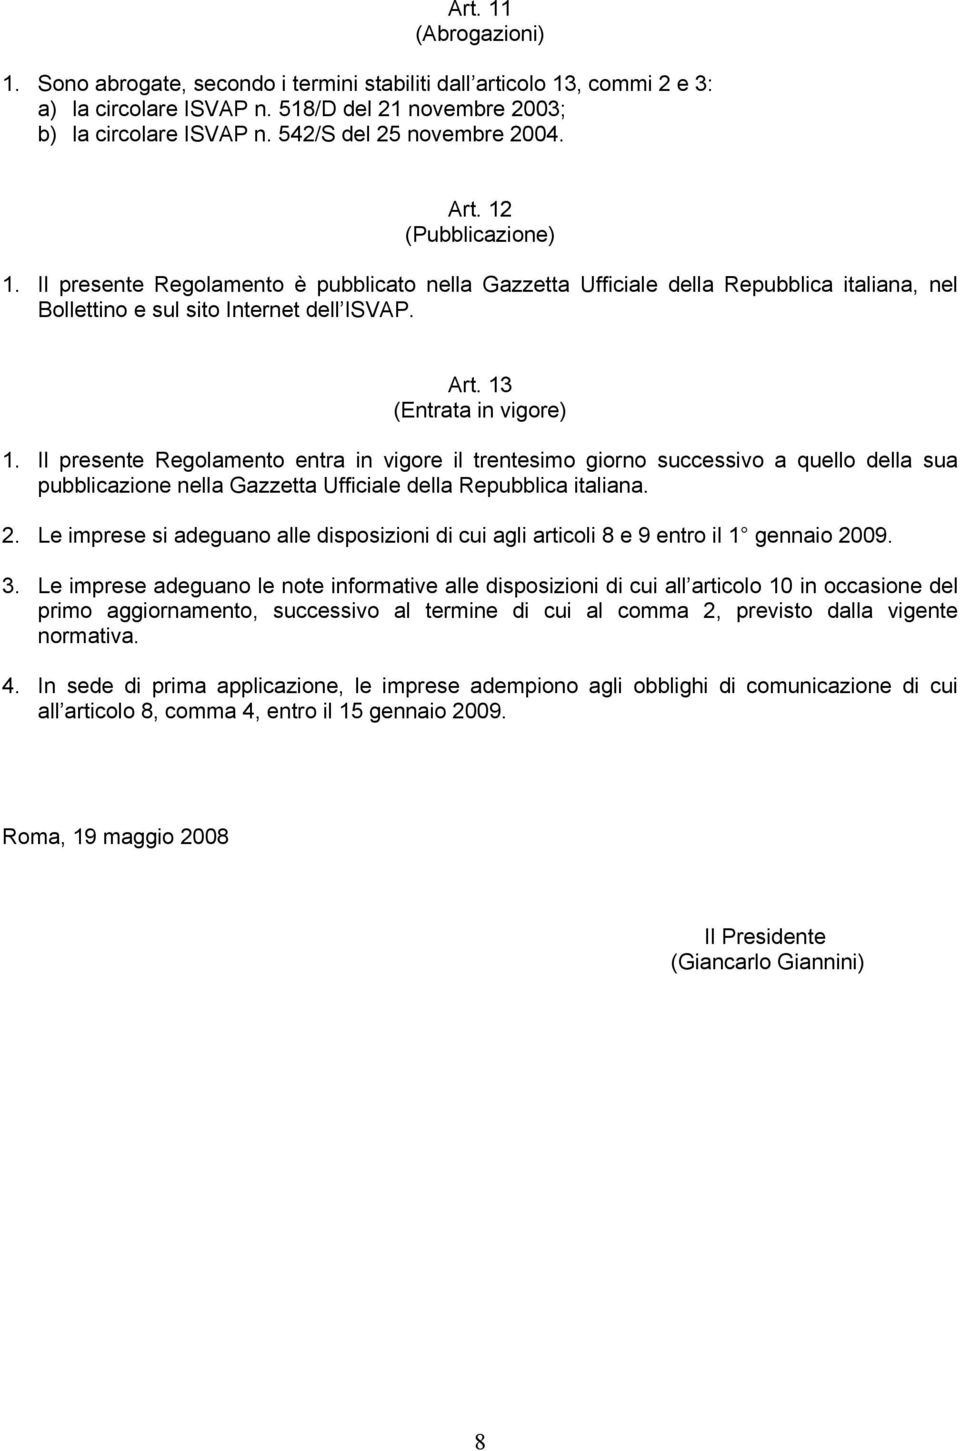 Il presente Regolamento entra in vigore il trentesimo giorno successivo a quello della sua pubblicazione nella Gazzetta Ufficiale della Repubblica italiana. 2.